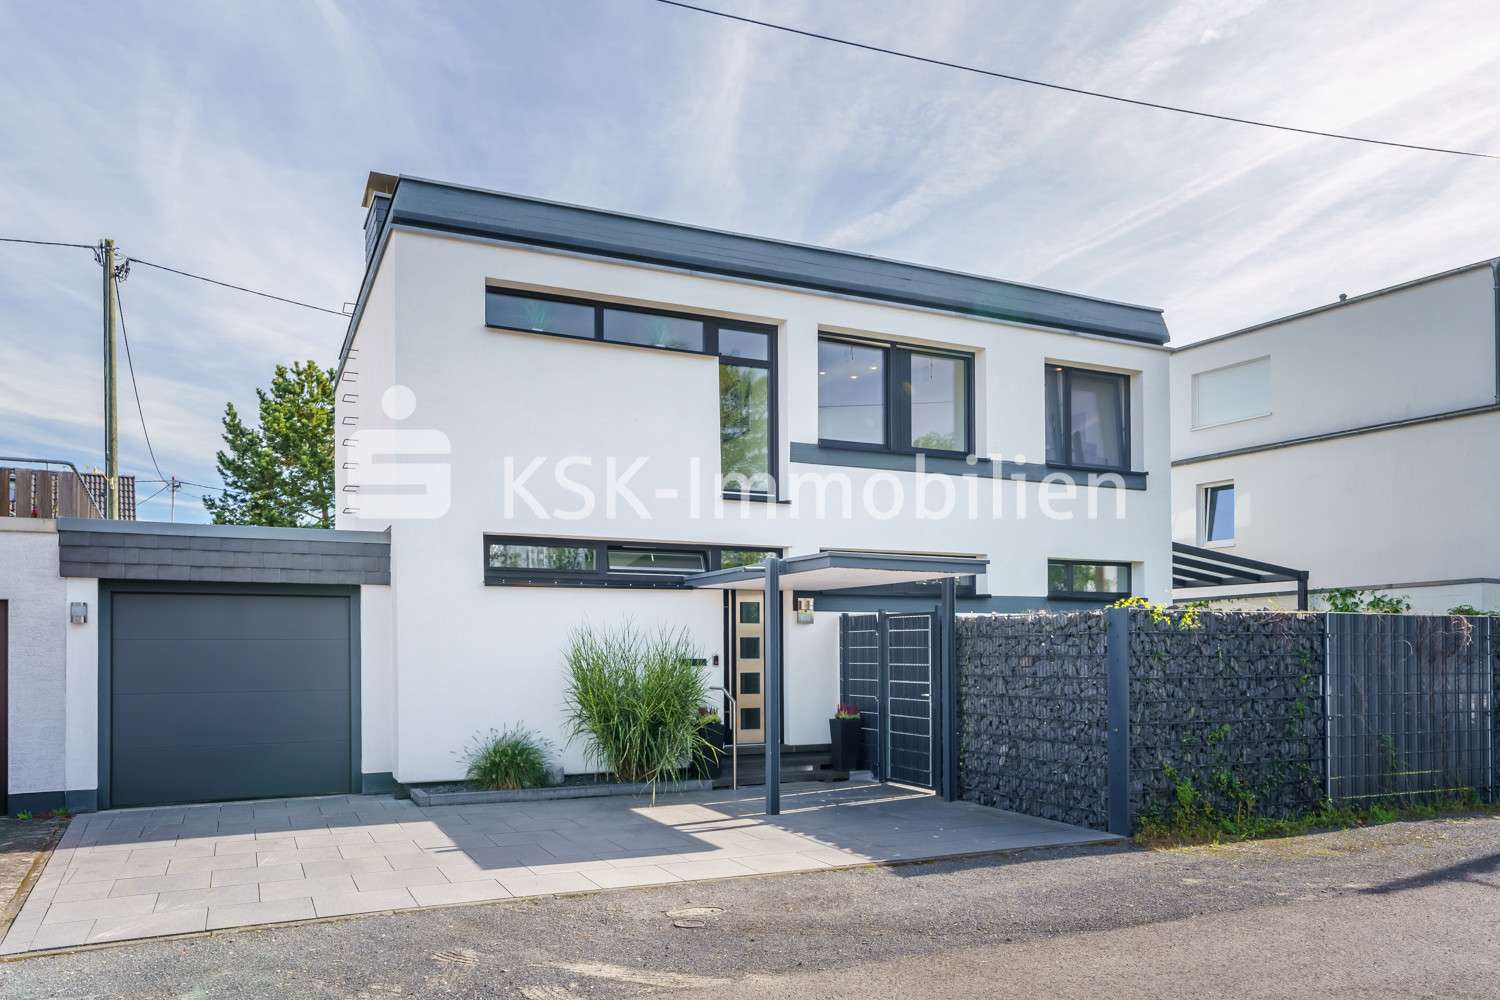 123199 Außenansicht - Einfamilienhaus in 53229 Bonn / Beuel mit 139m² kaufen